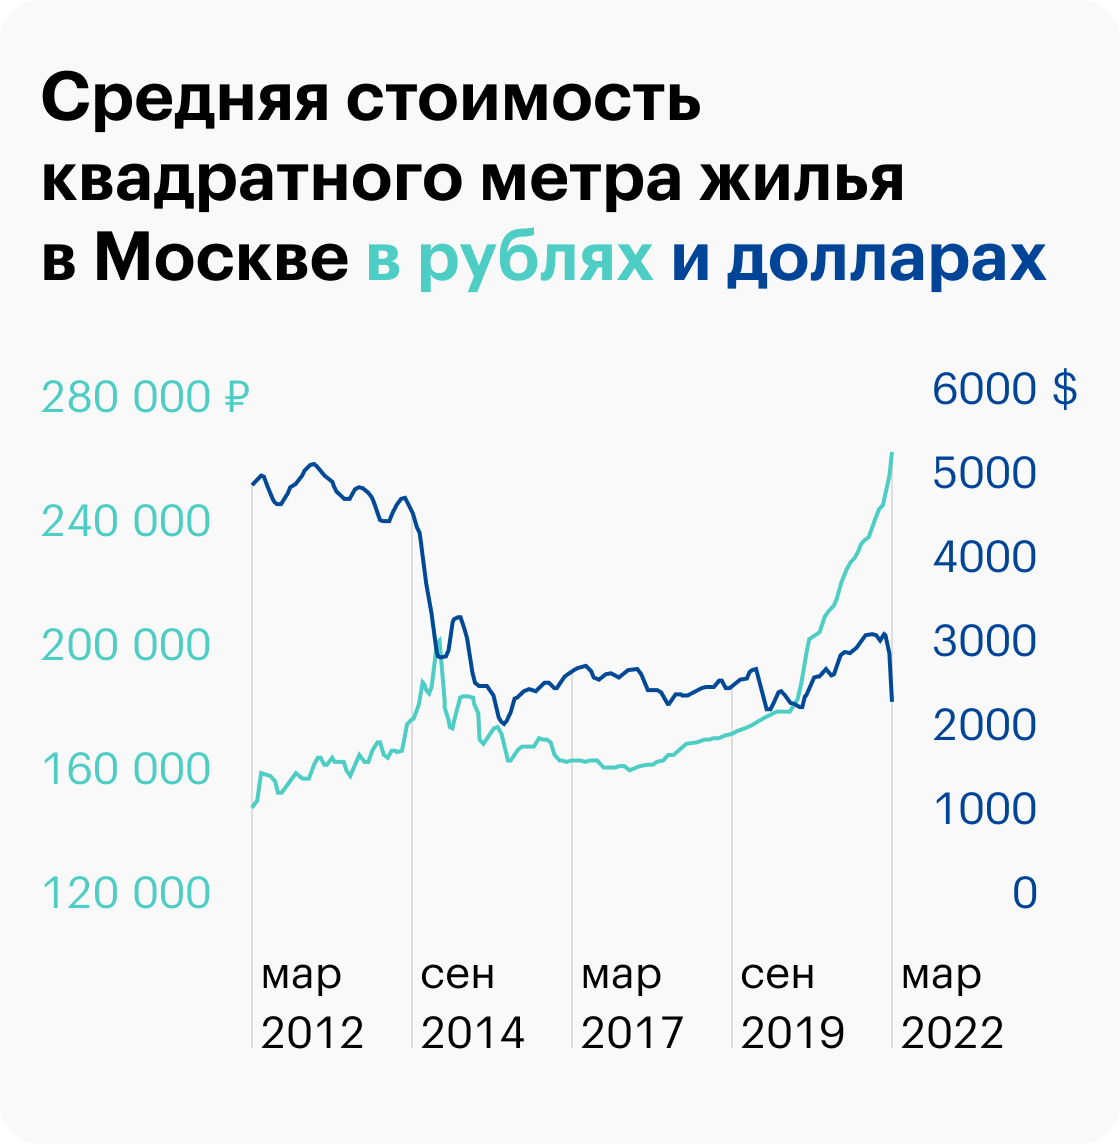 Рублевый рост стоимости жилья в Москве вырос с марта 2012&nbsp;года по март 2022&nbsp;года на 73,2%. Но если пересчитать в доллары, цена упала на 51,4%. Источник: irn.ru